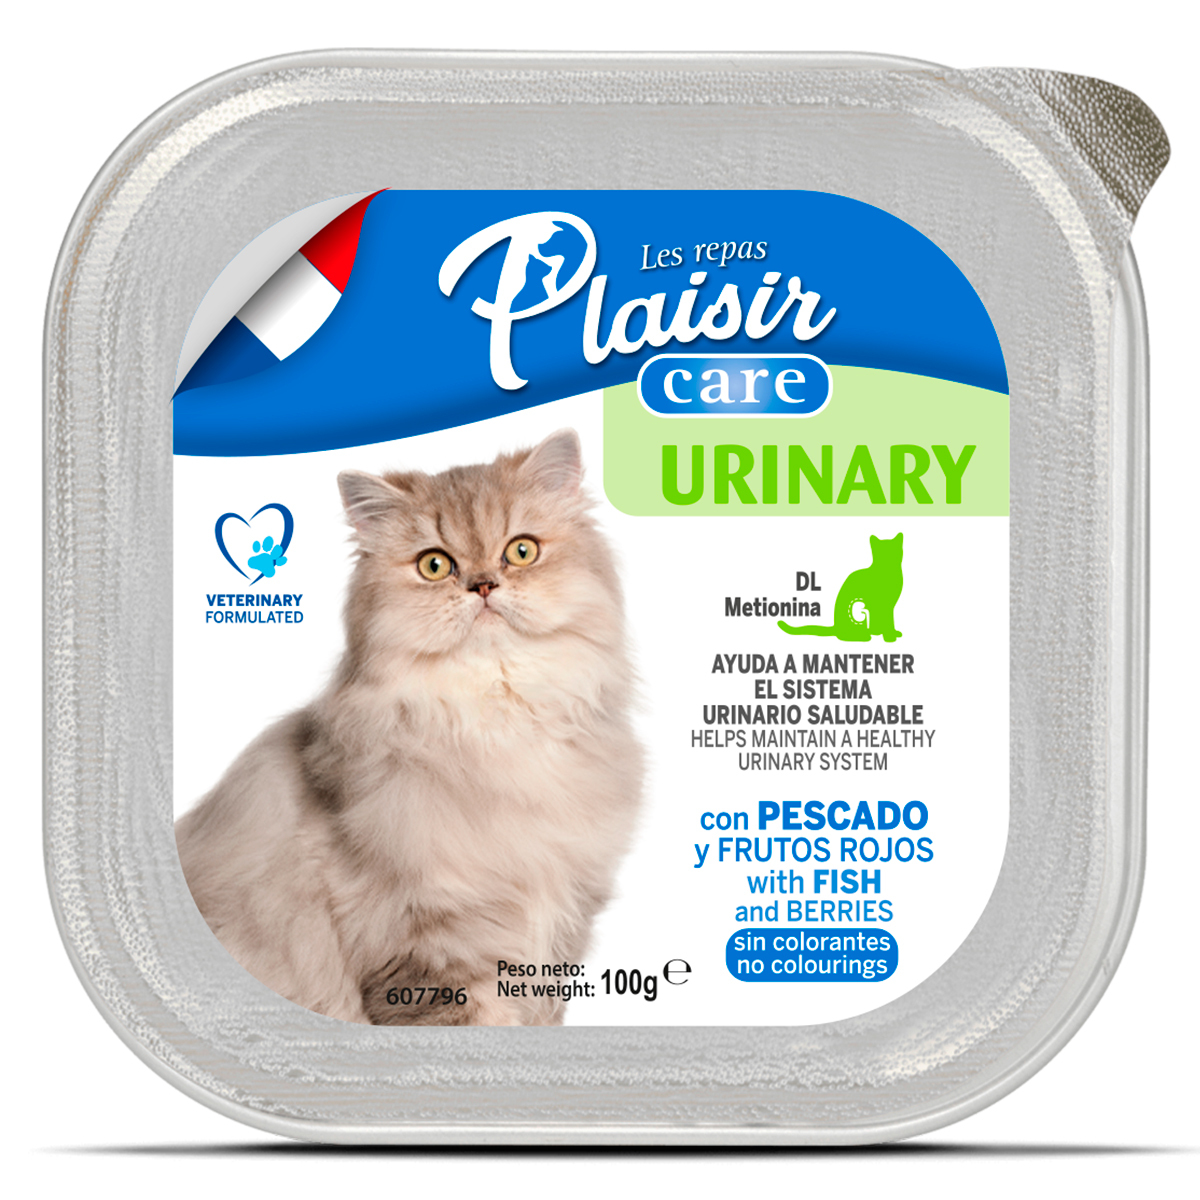 Les Repas Plaisir Urinary Care Alimento Húmedo Cuidado Urinario para Gato Adulto Receta Pescado y Frutos Rojos, 100 g